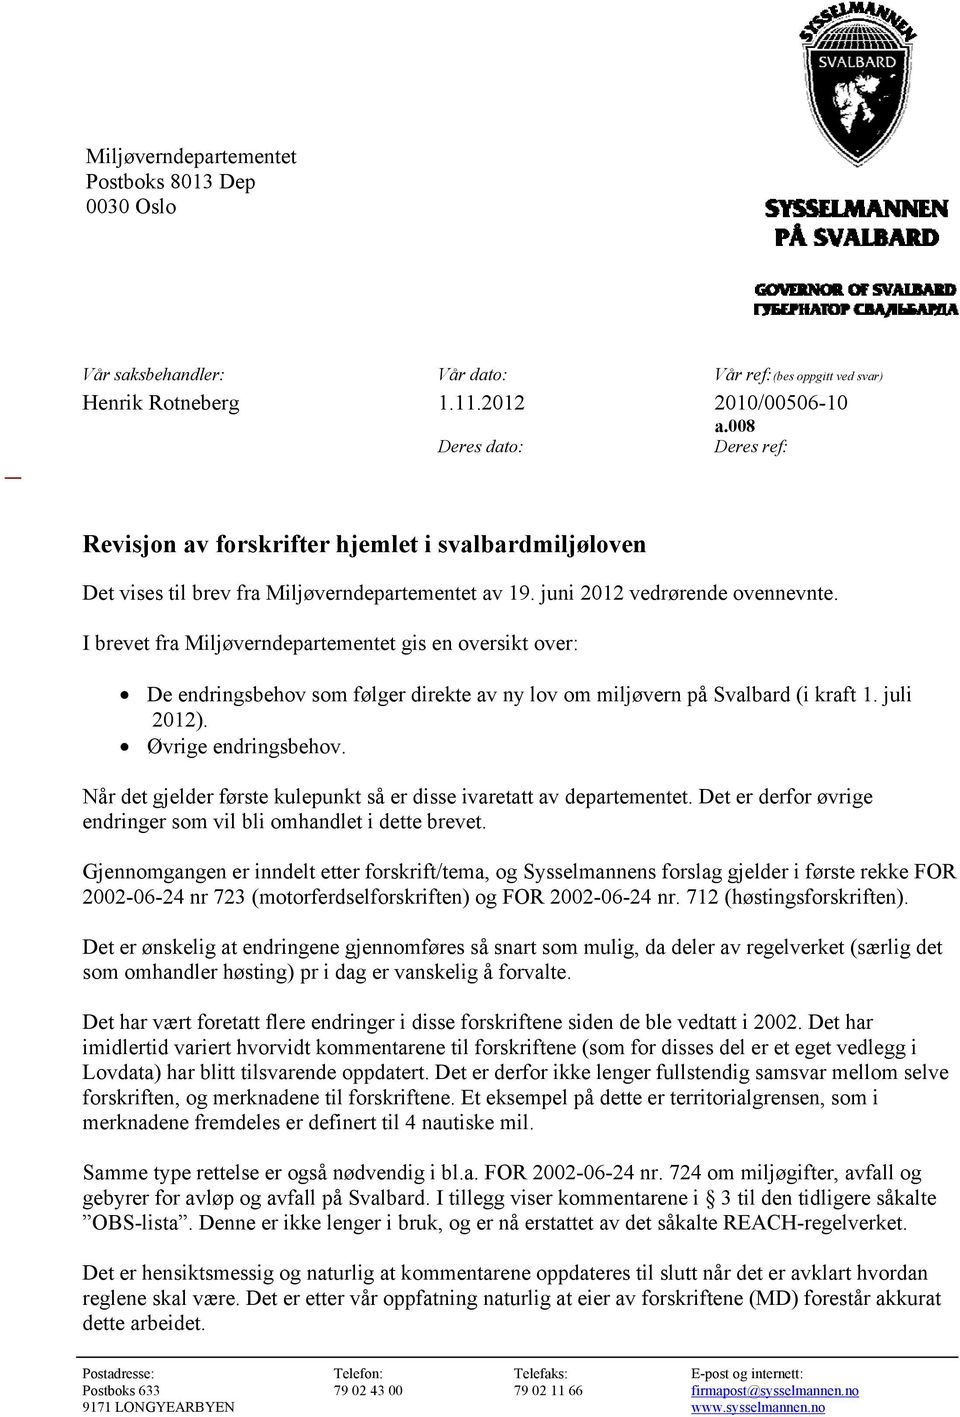 I brevet fra Miljøverndepartementet gis en oversikt over: De endringsbehov som følger direkte av ny lov om miljøvern på Svalbard (i kraft 1. juli 2012). Øvrige endringsbehov.